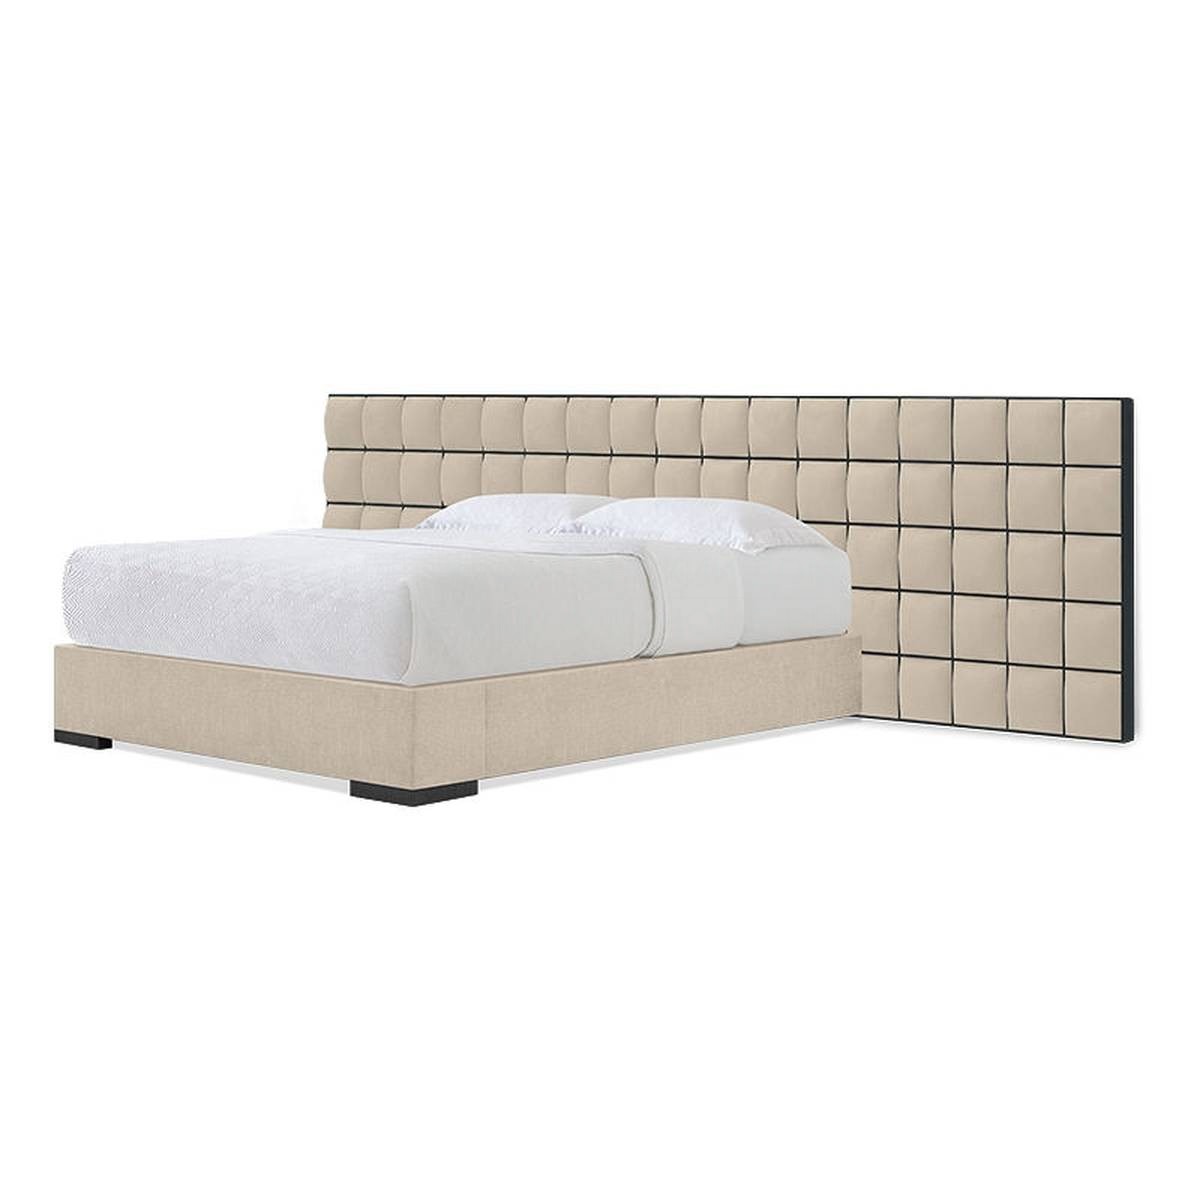 Кровать с комбинированным изголовьем Tableau bed из США фабрики CHRISTOPHER GUY